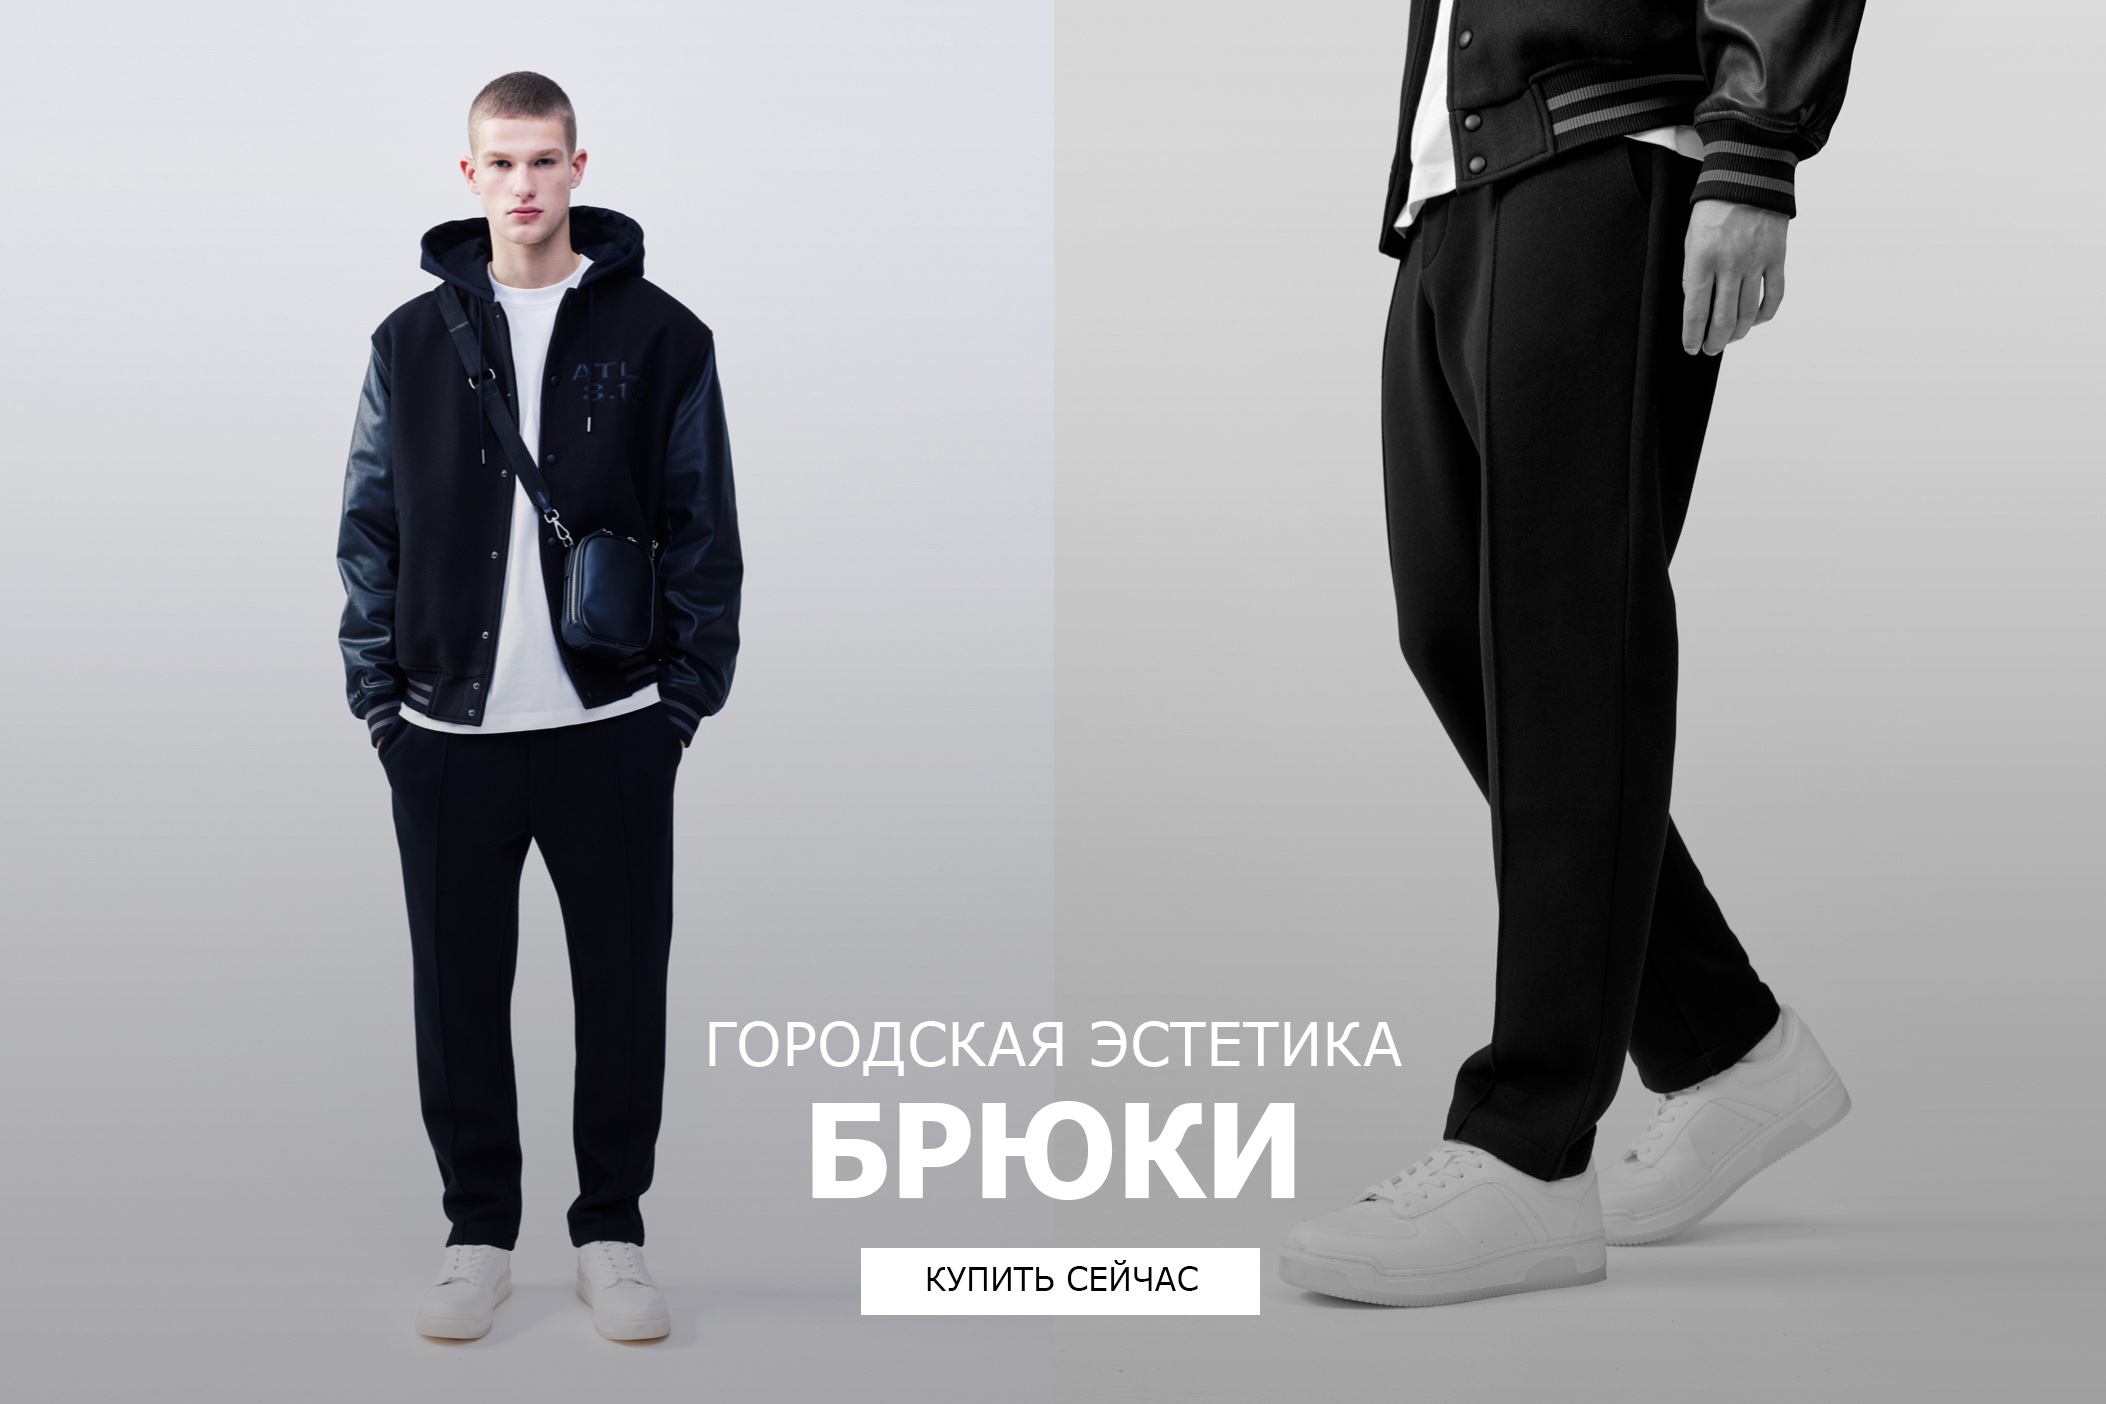 malino-v.ru — российский премиум бренд женской одежды.